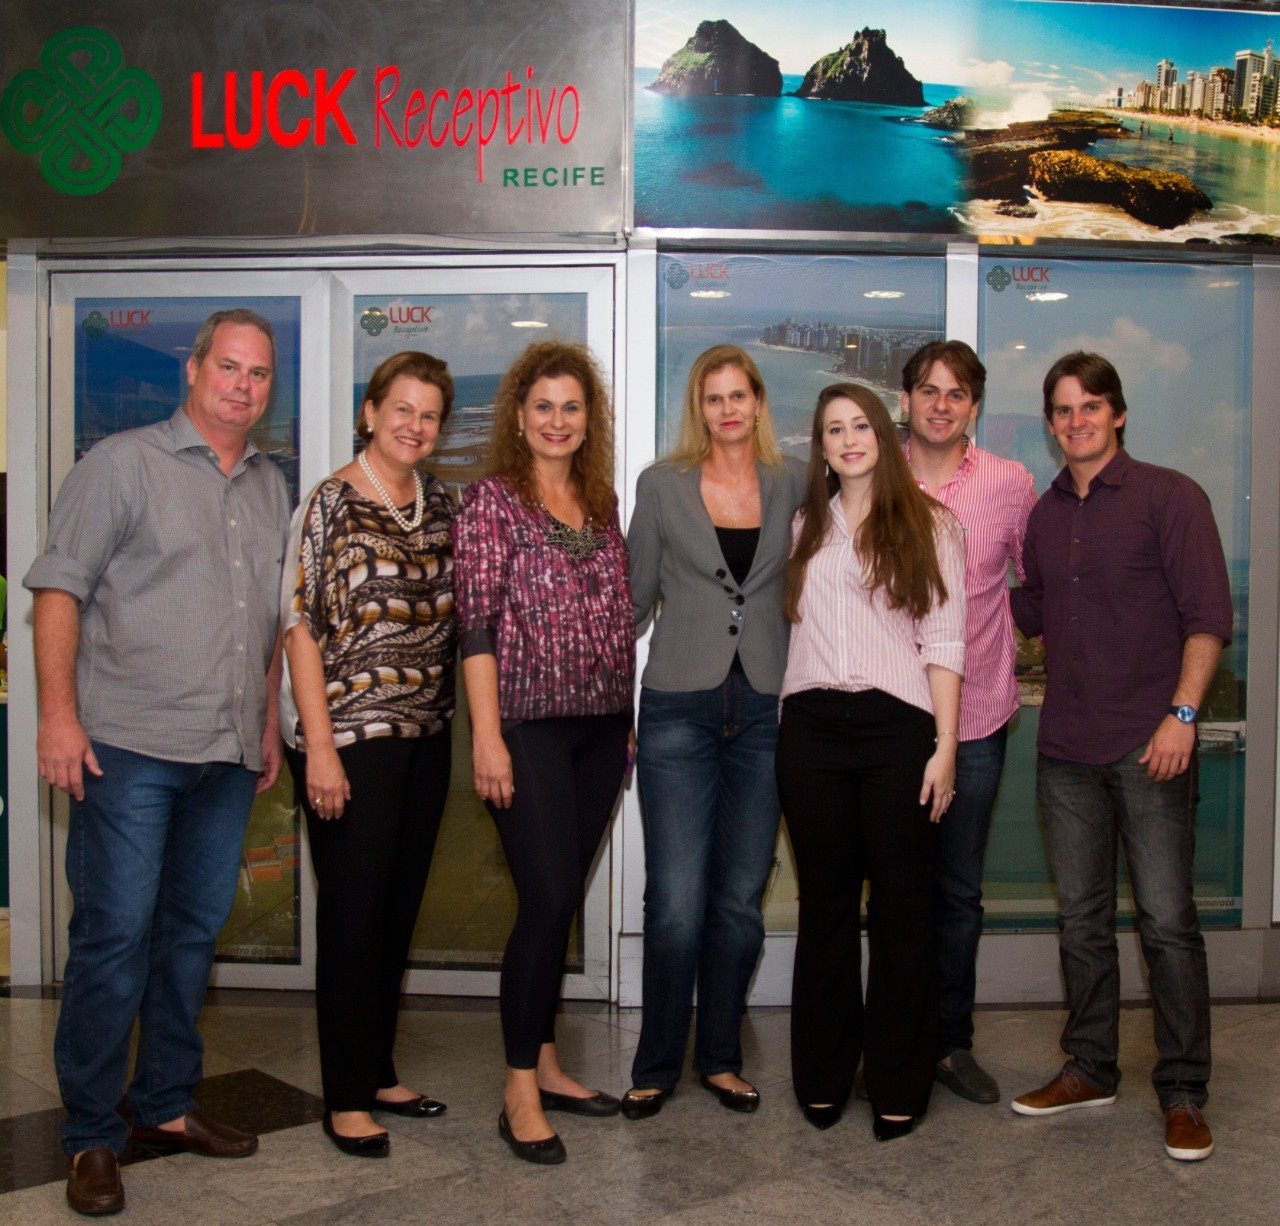 Segunda e terceira geração da família Luck: Gustavo, Beta, Sandra, Renata, Juliana, Guilherme e Filipe Luck 